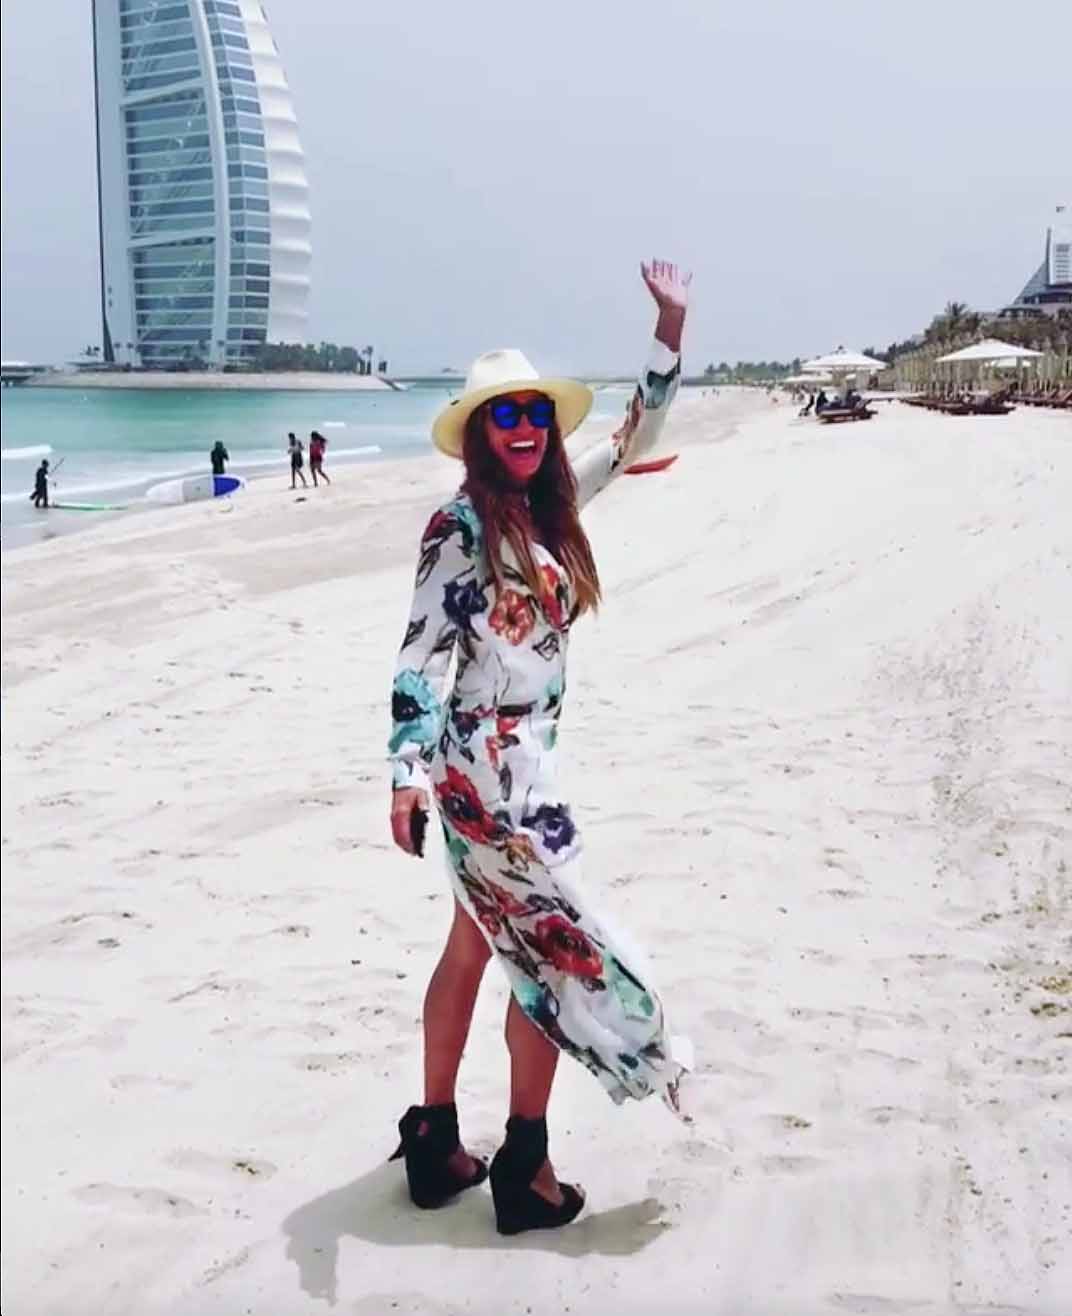 Hasta en la playa Lili anda con los espectaculares zapatos altos que usa